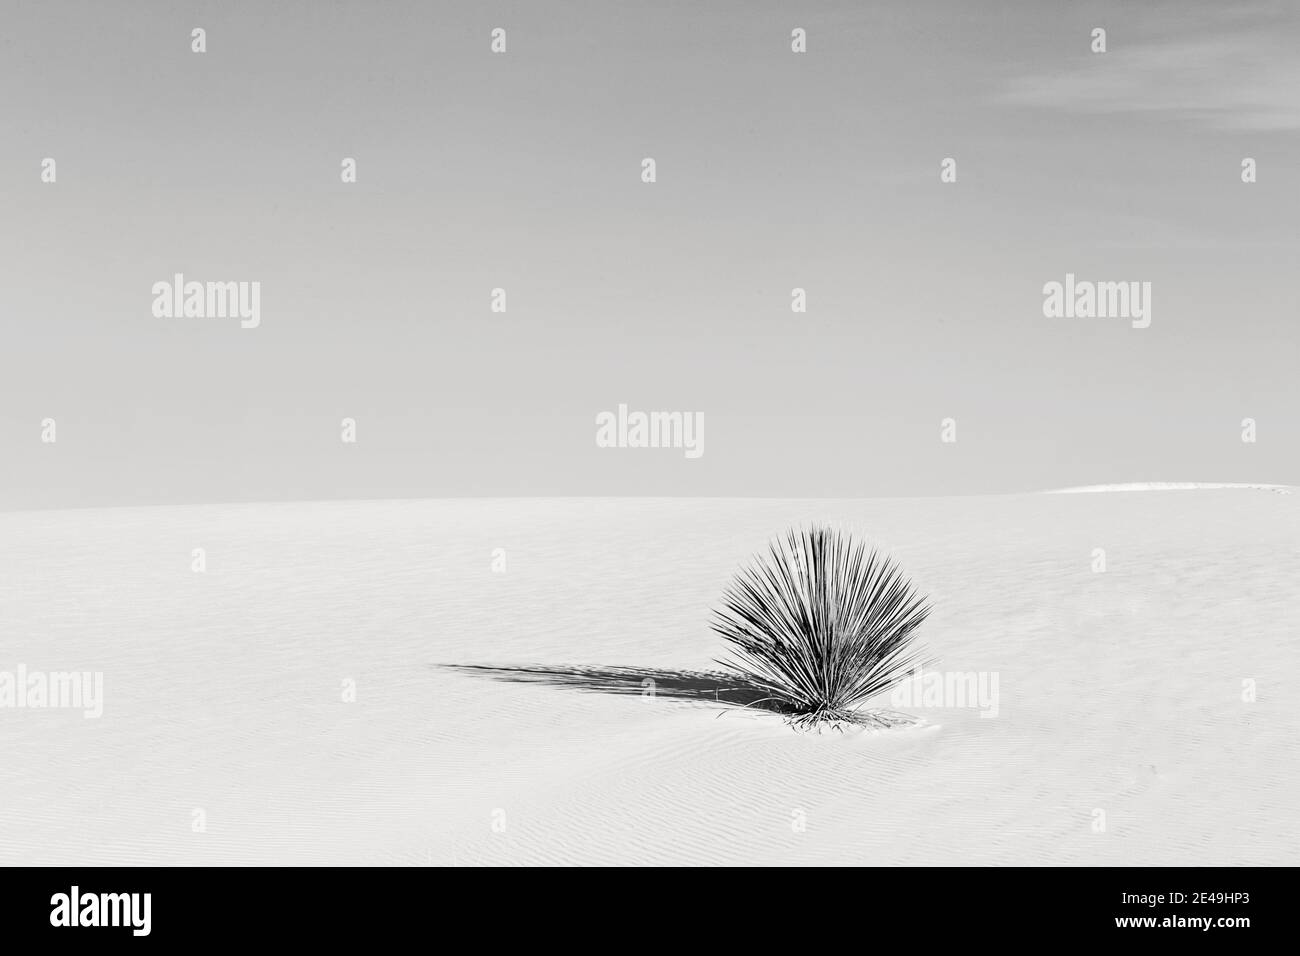 noir et blanc de cactus solitaires dans une dune de sable désertique, minimaliste. Banque D'Images